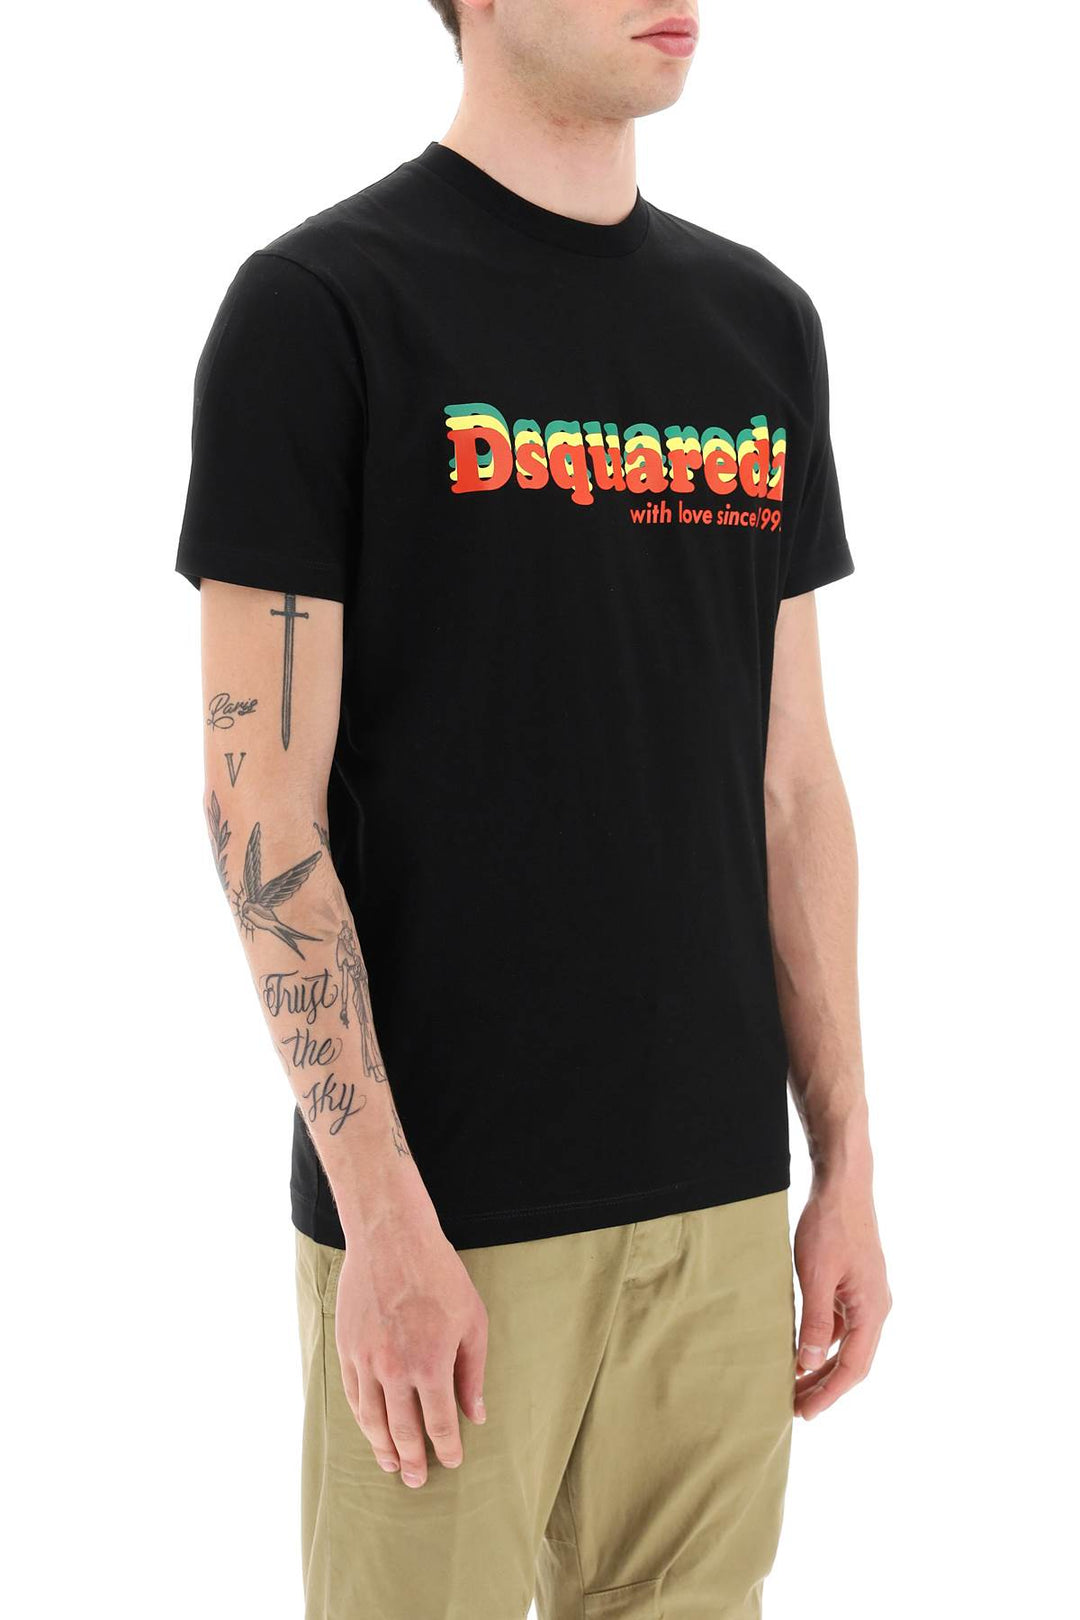 T Shirt Cool Fit Stampa Logo - Dsquared2 - Uomo